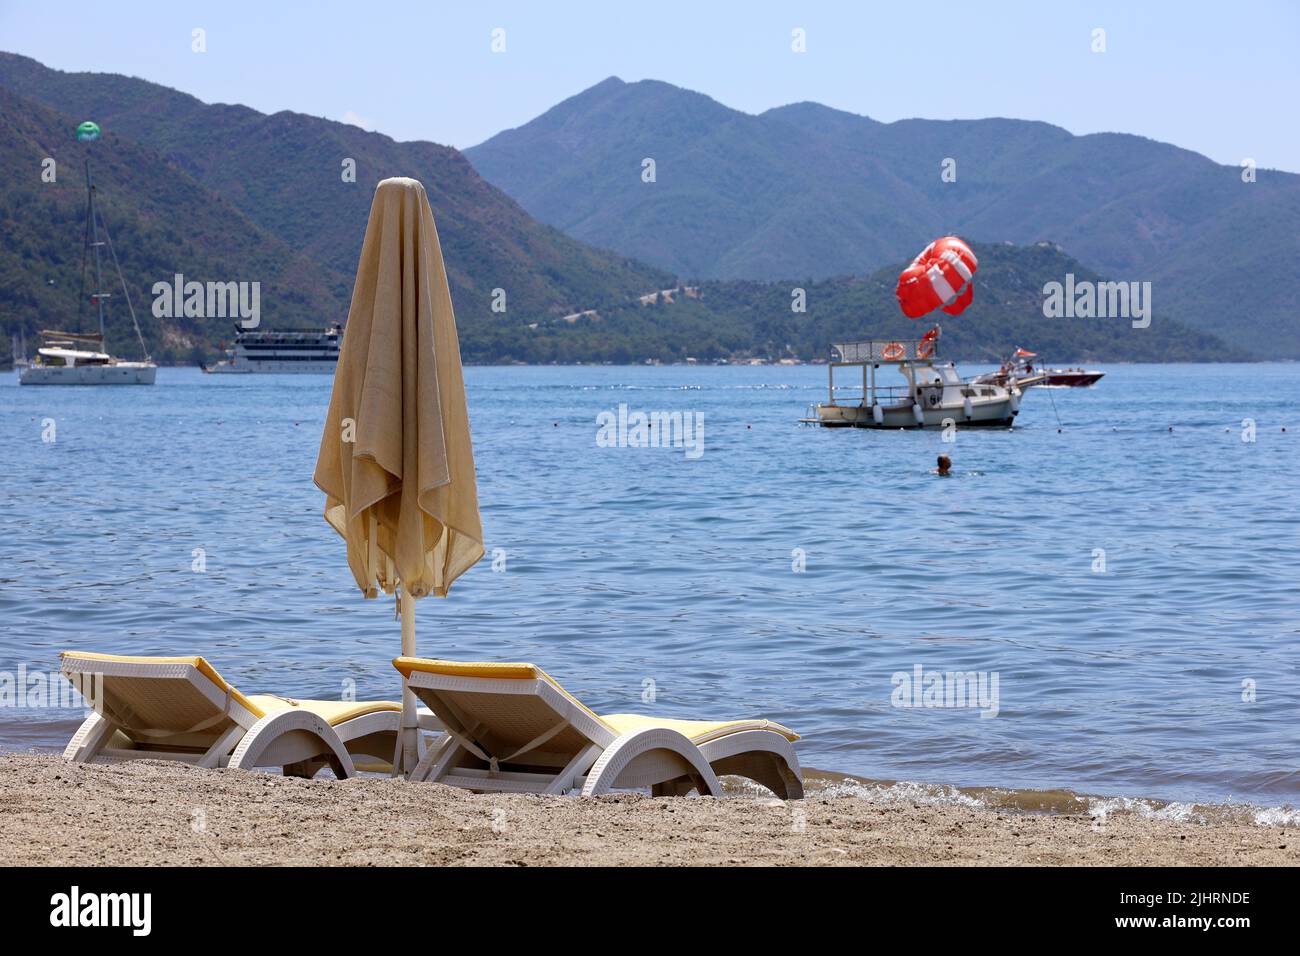 Vider les chaises longues et le parasol sur une plage. Vue sur la mer Méditerranée, bateau avec parachute ascensionnel et montagnes verdoyantes en brume Banque D'Images